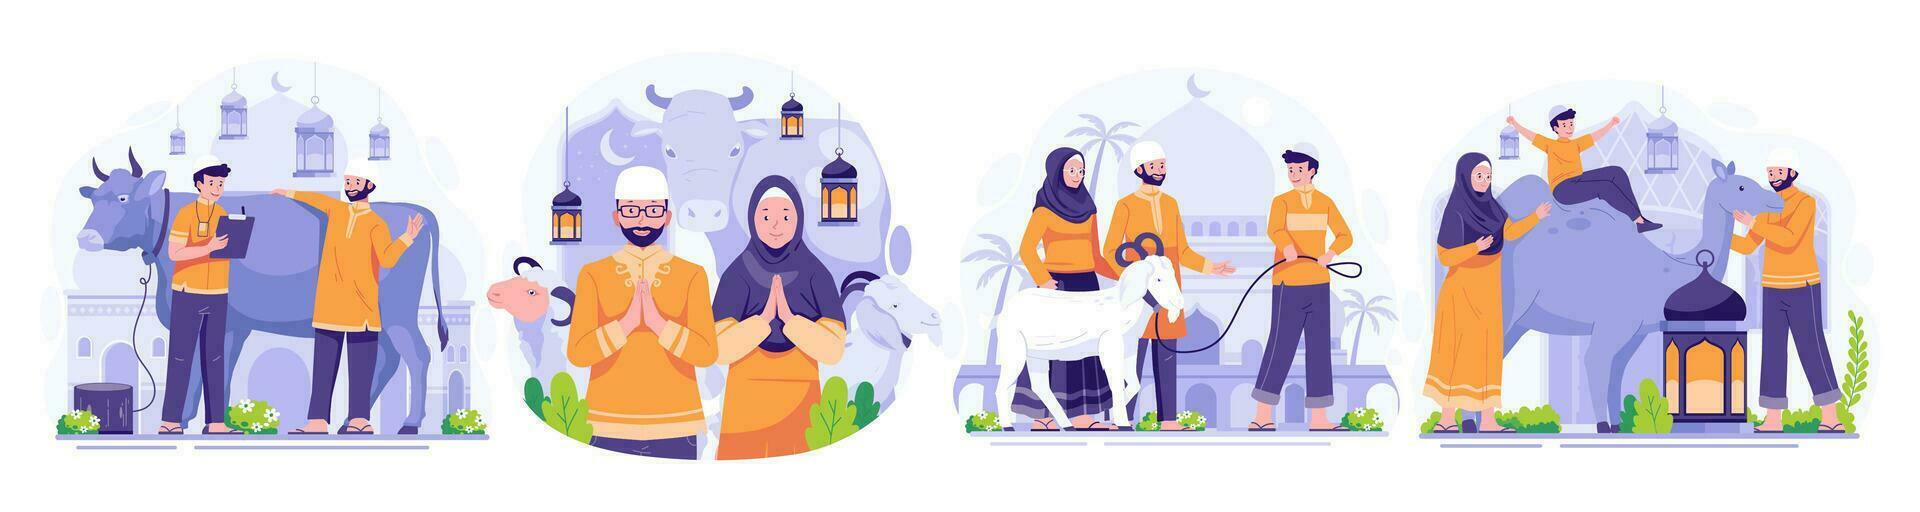 Illustration Set of Happy Eid Al Adha Mubarak. Muslim People celebrate Eid Al Adha. Vector illustration